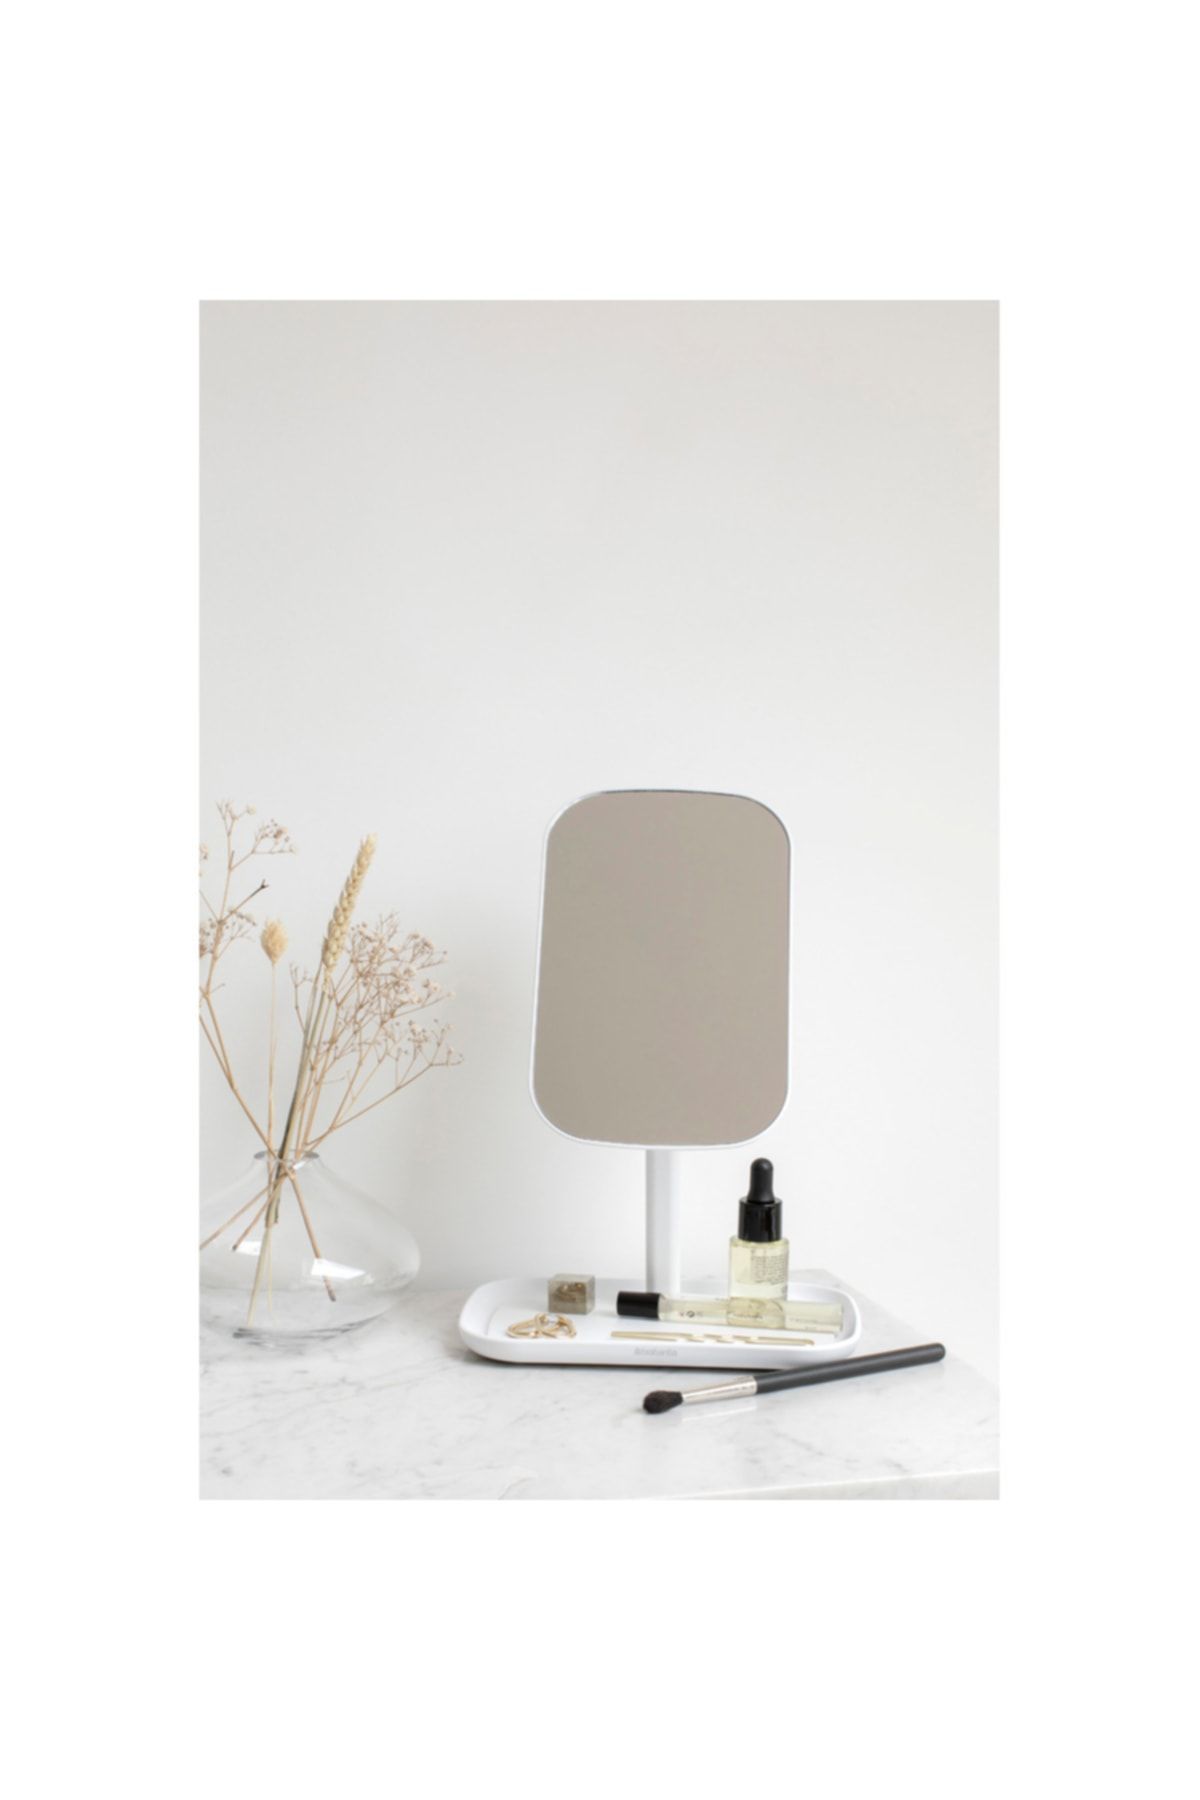 Beyaz Ayaklı Masa Aynası 12,6cmx20cmx28,3cm